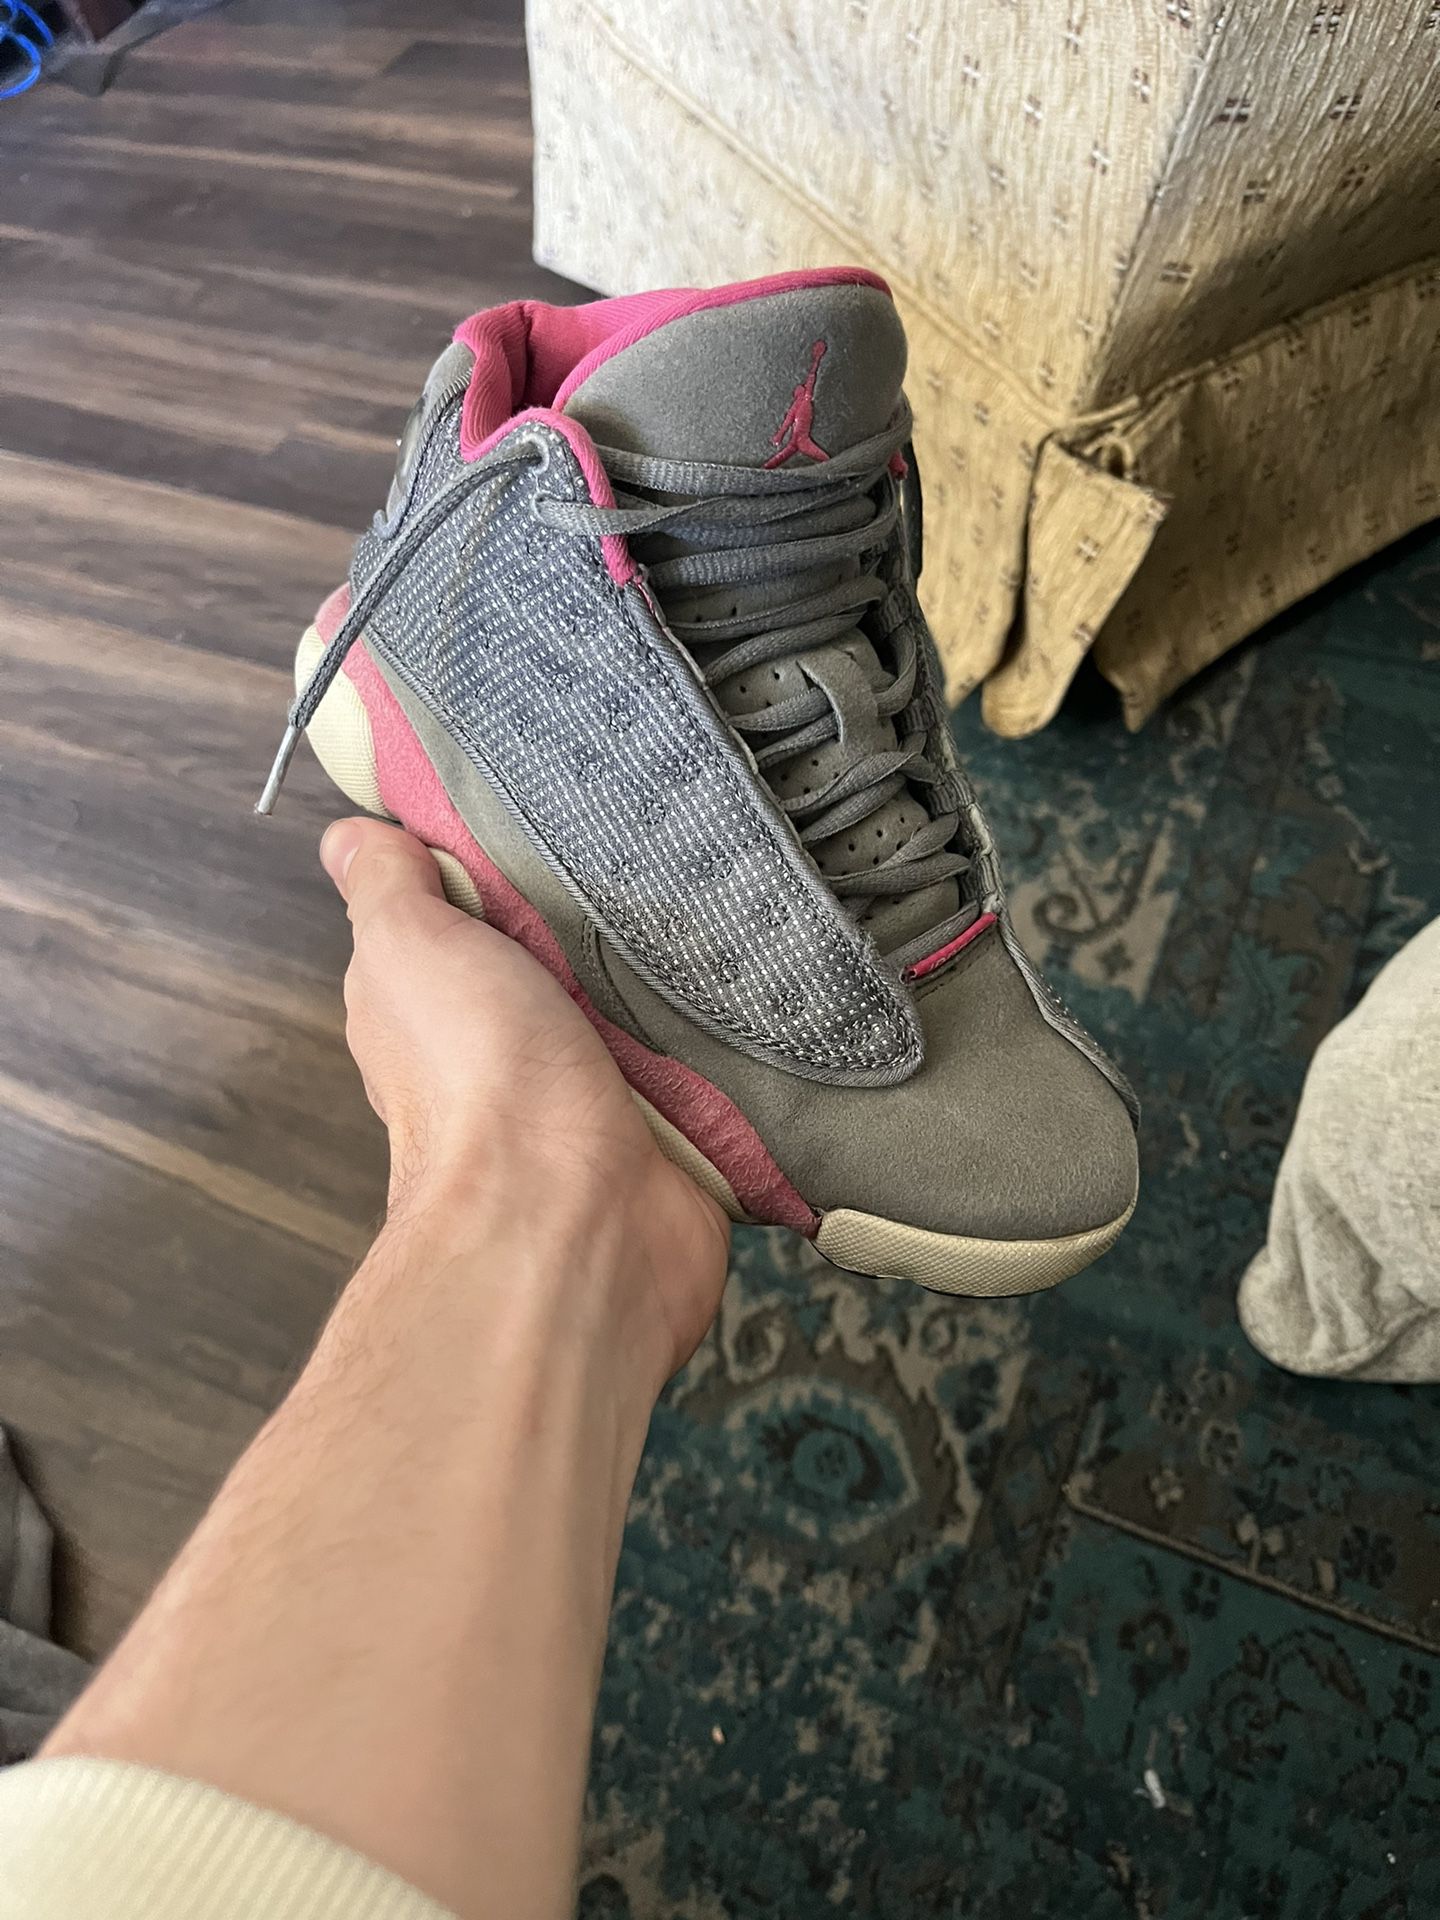 Jordan 13 Size 5.5 Y